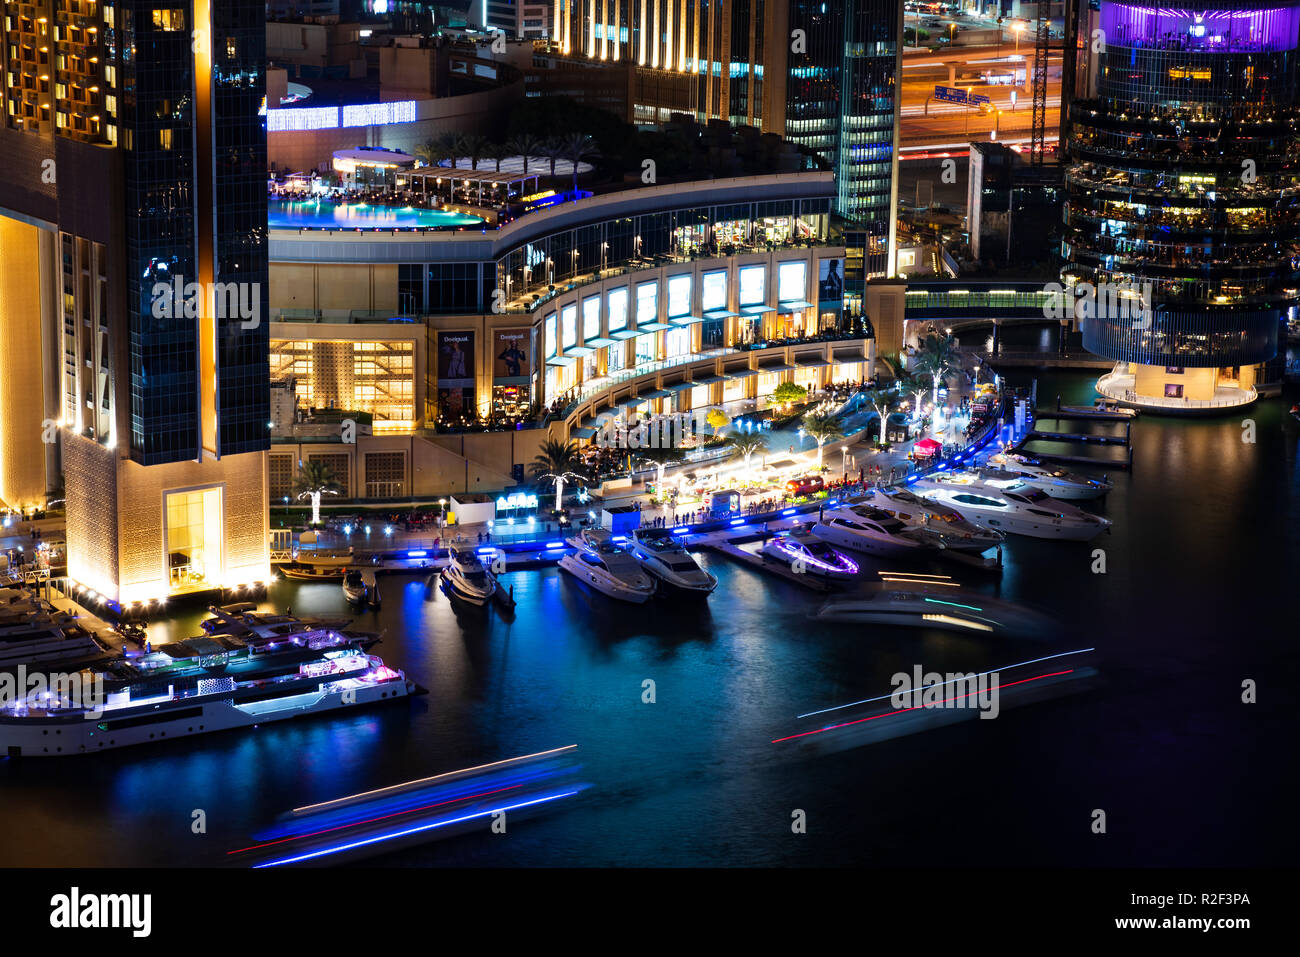 Dubai, Vereinigte Arabische Emirate - November 16, 2018: Dubai Marina Mall Nacht Blick auf moderne Architektur und Luxus der berühmten Reisen destina Stockfoto